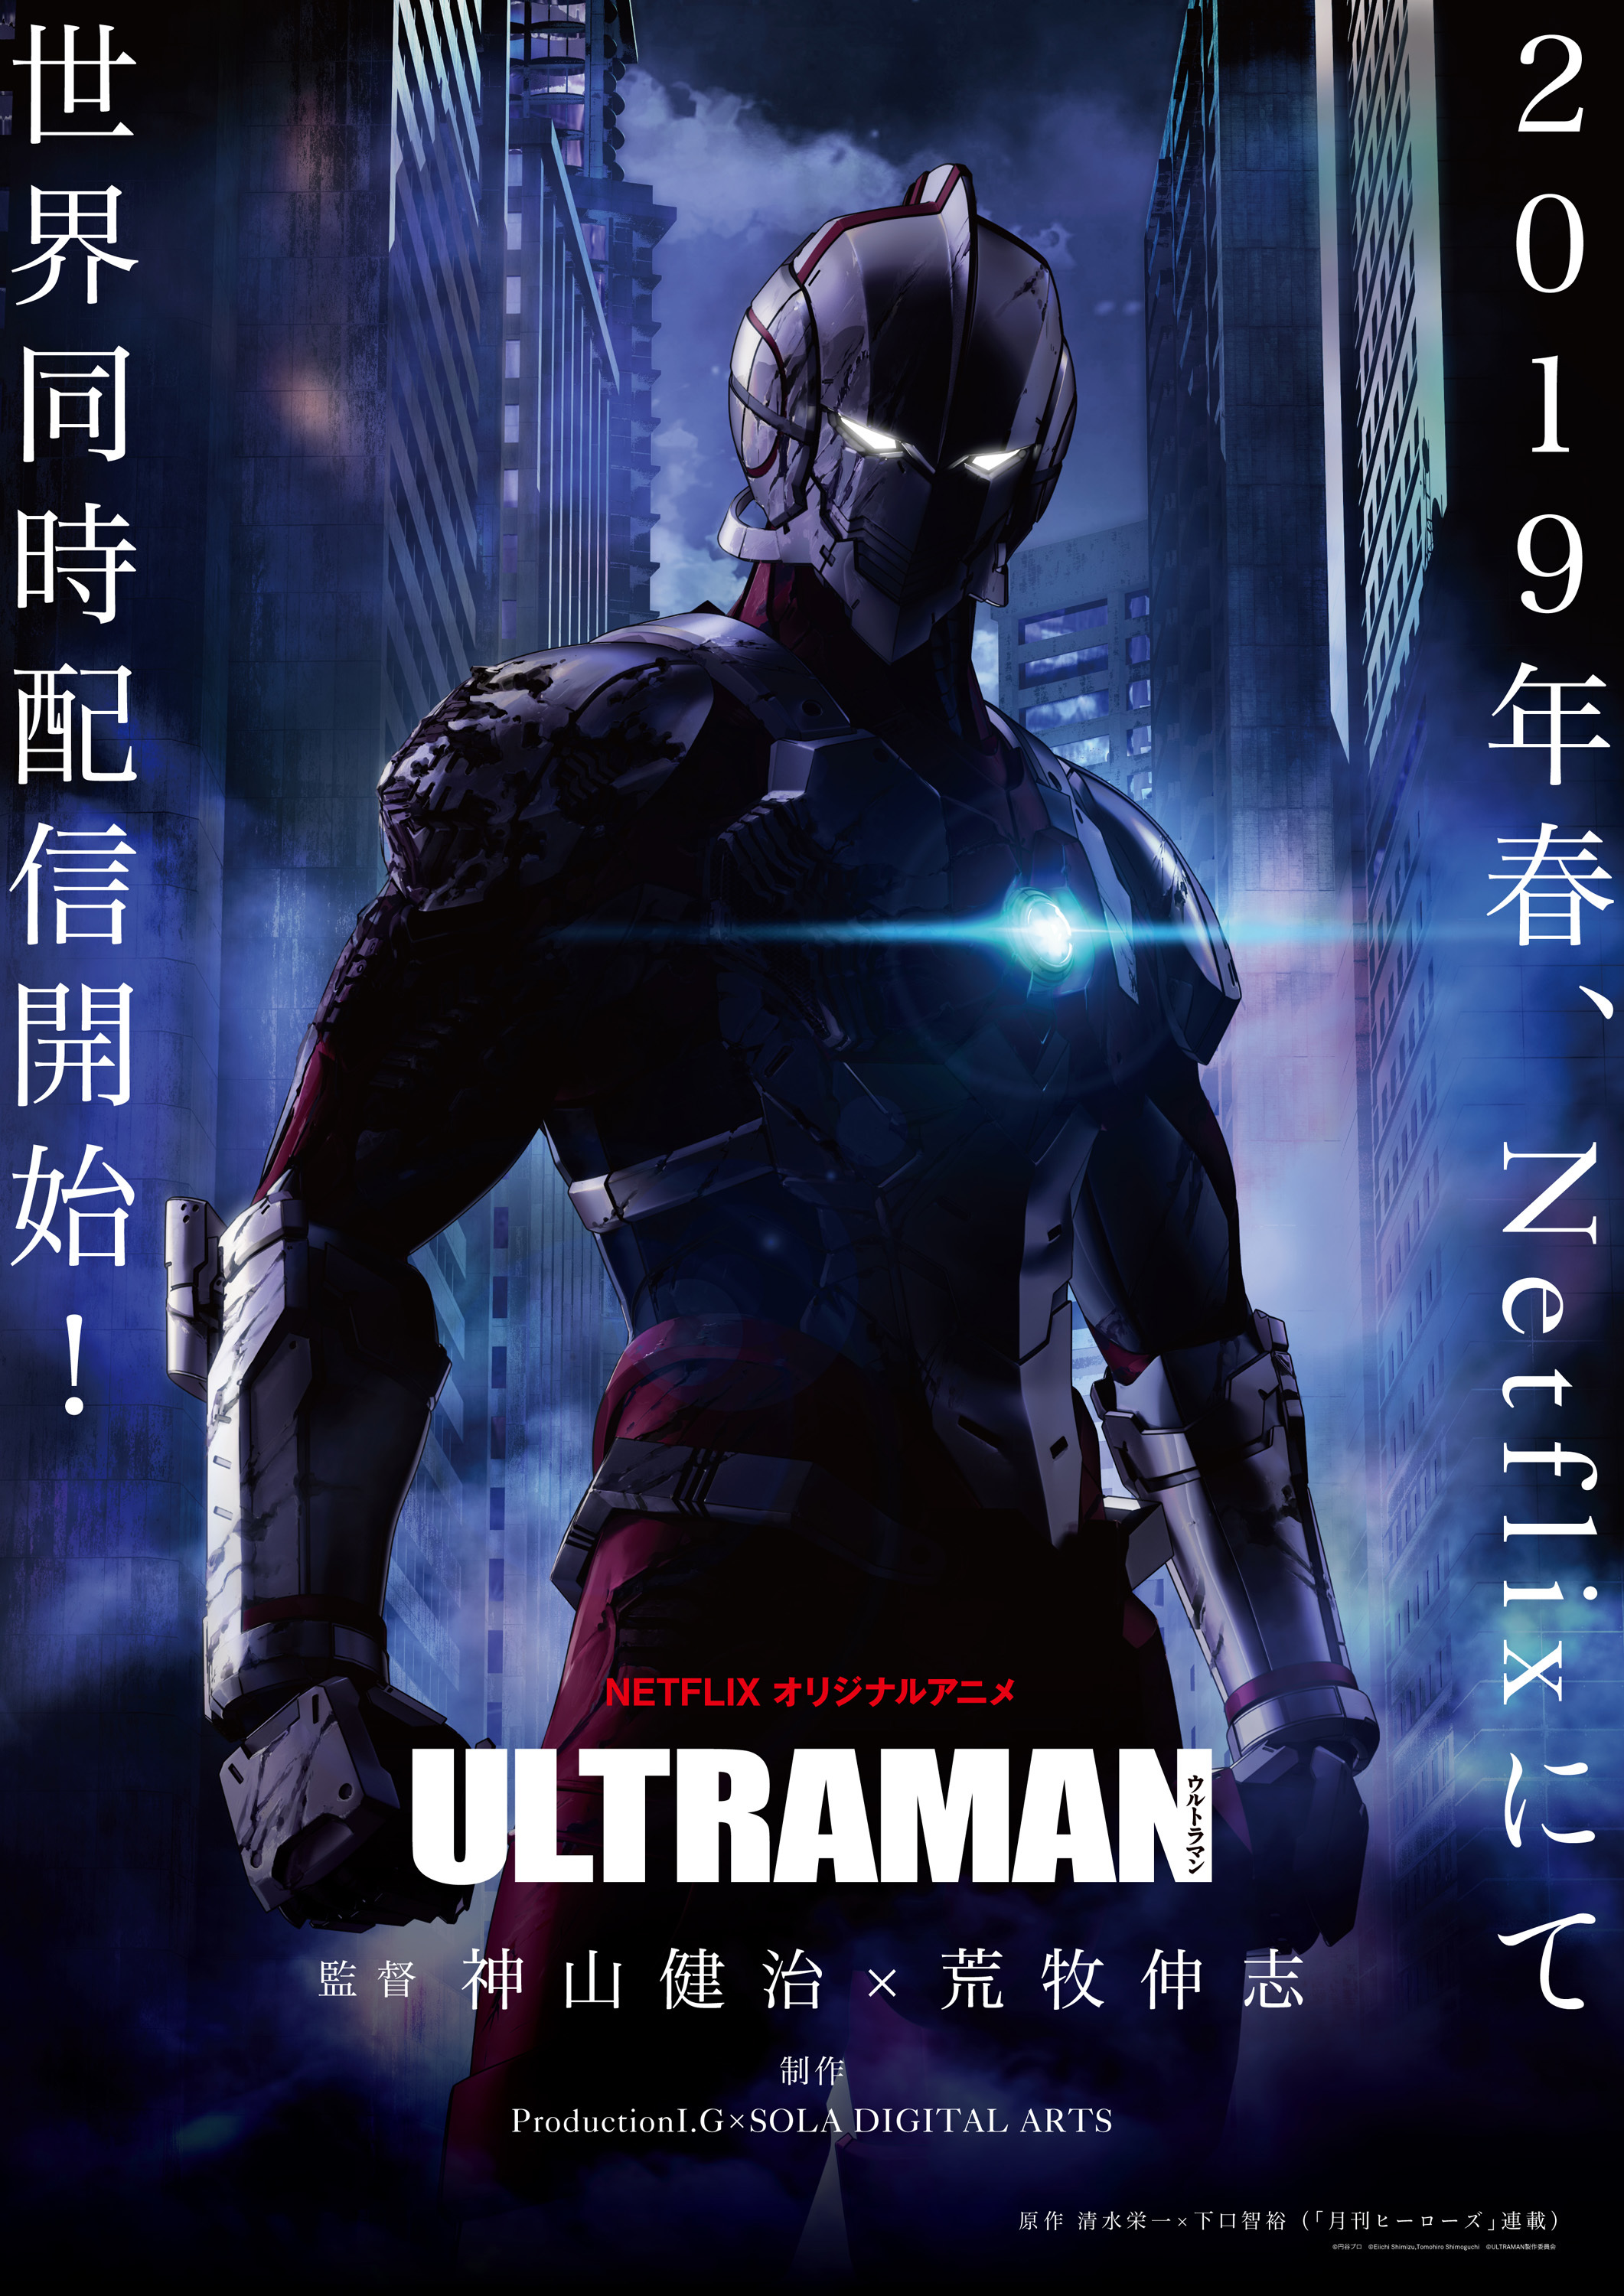 アニメ Ultraman 19年にnetflixにて世界同時配信決定 Spice エンタメ特化型情報メディア スパイス